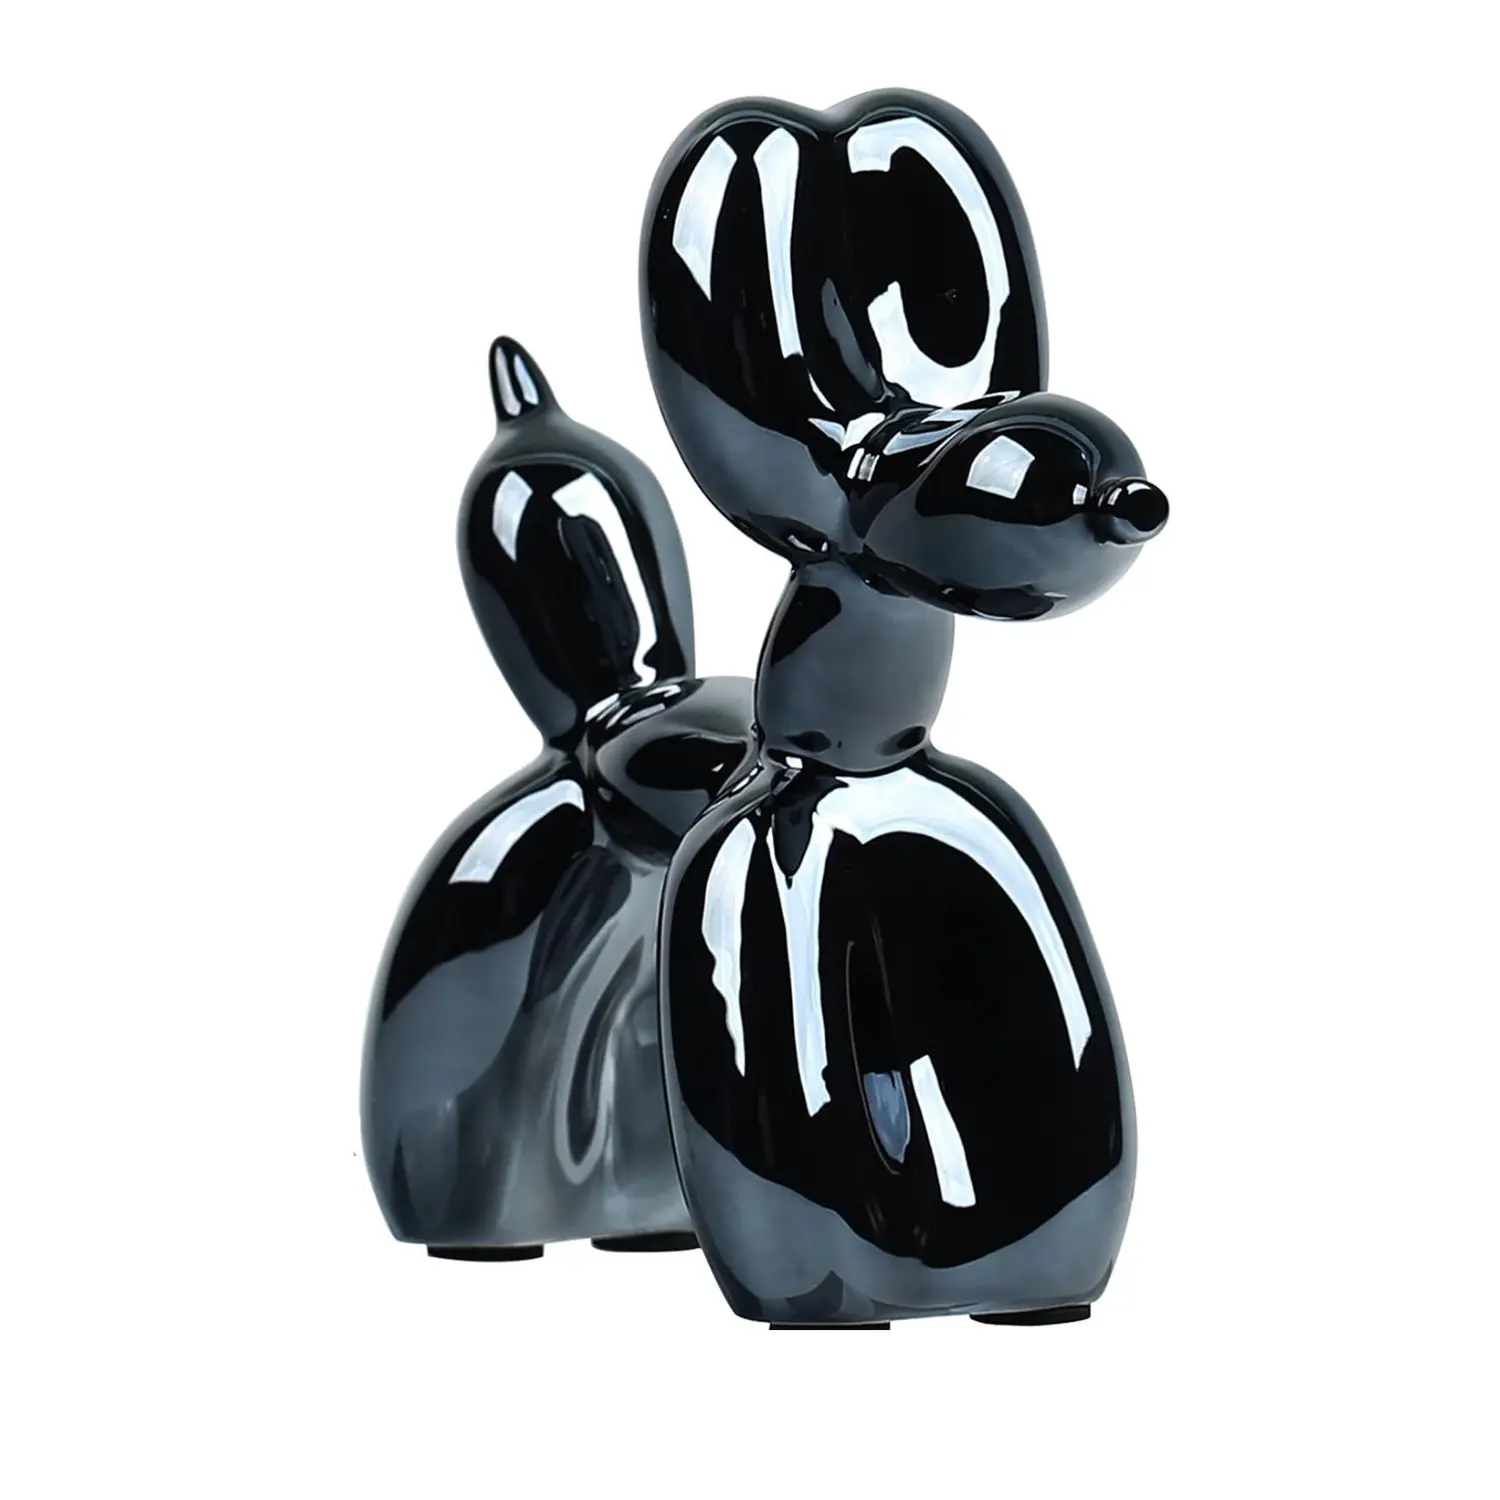 Modern moda avrupa reçine Jeff balon köpek yaratıcı hayvan sanat toptan özelleştirme